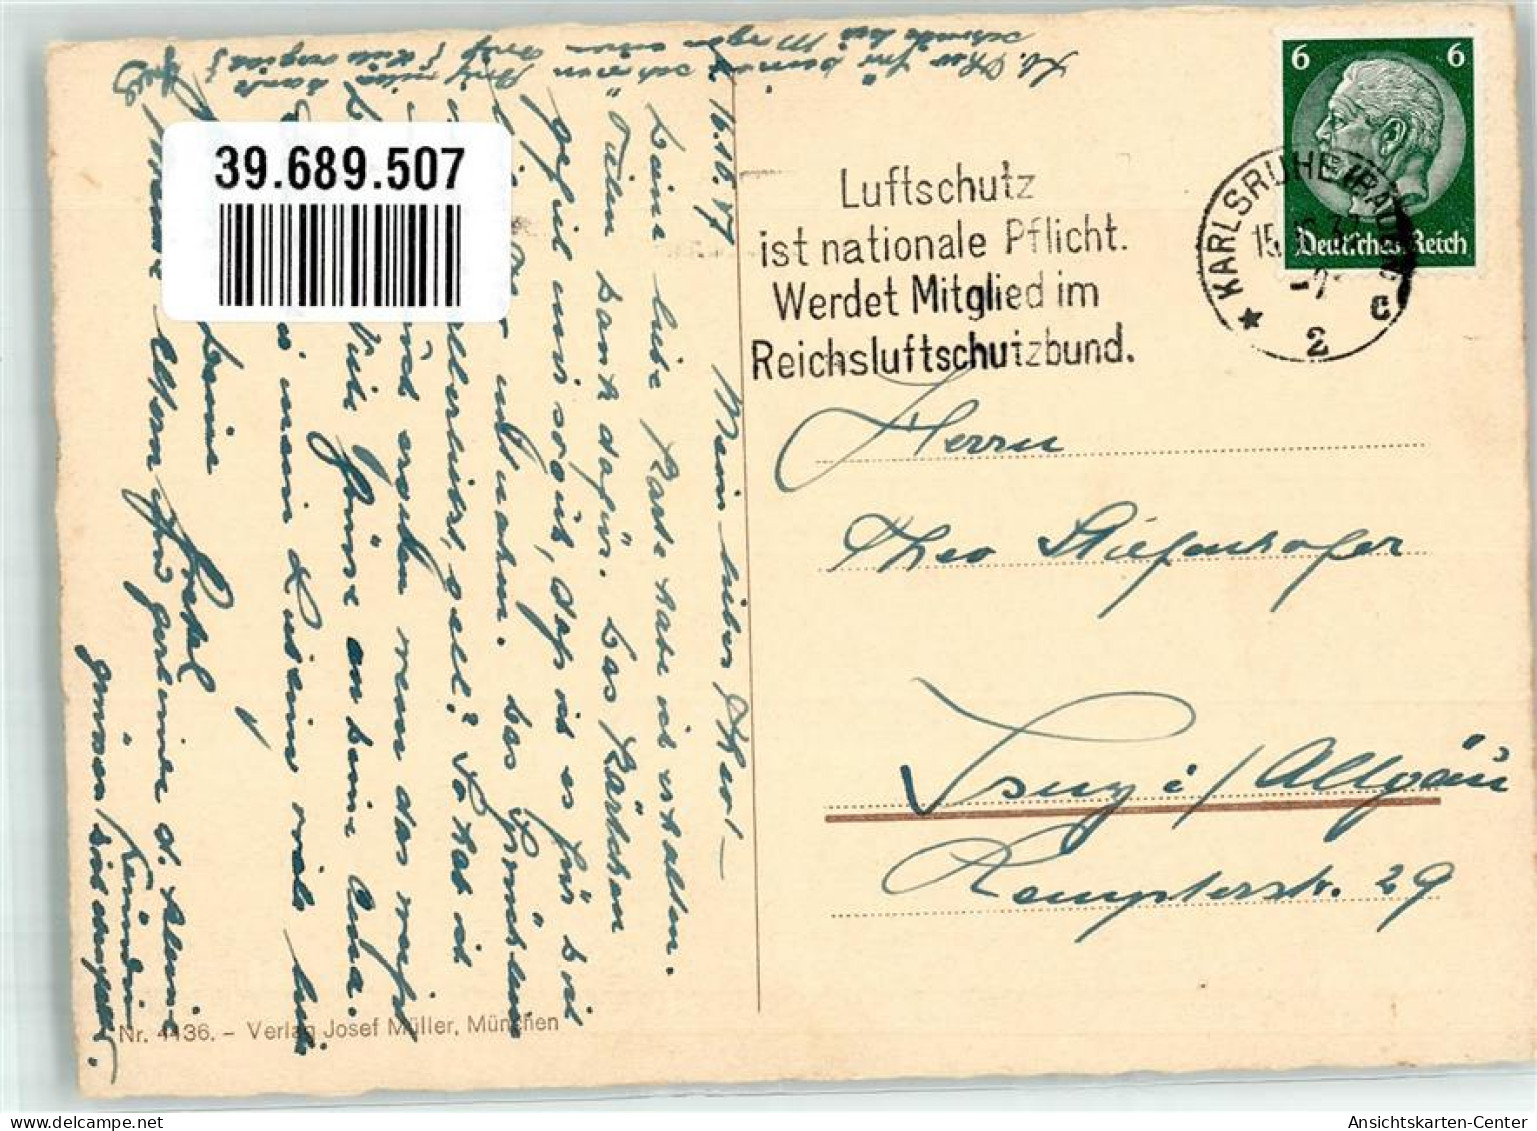 39689507 - Verlag Josef Mueller Nr. 4436 Kind Ziehharmonika - Hummel